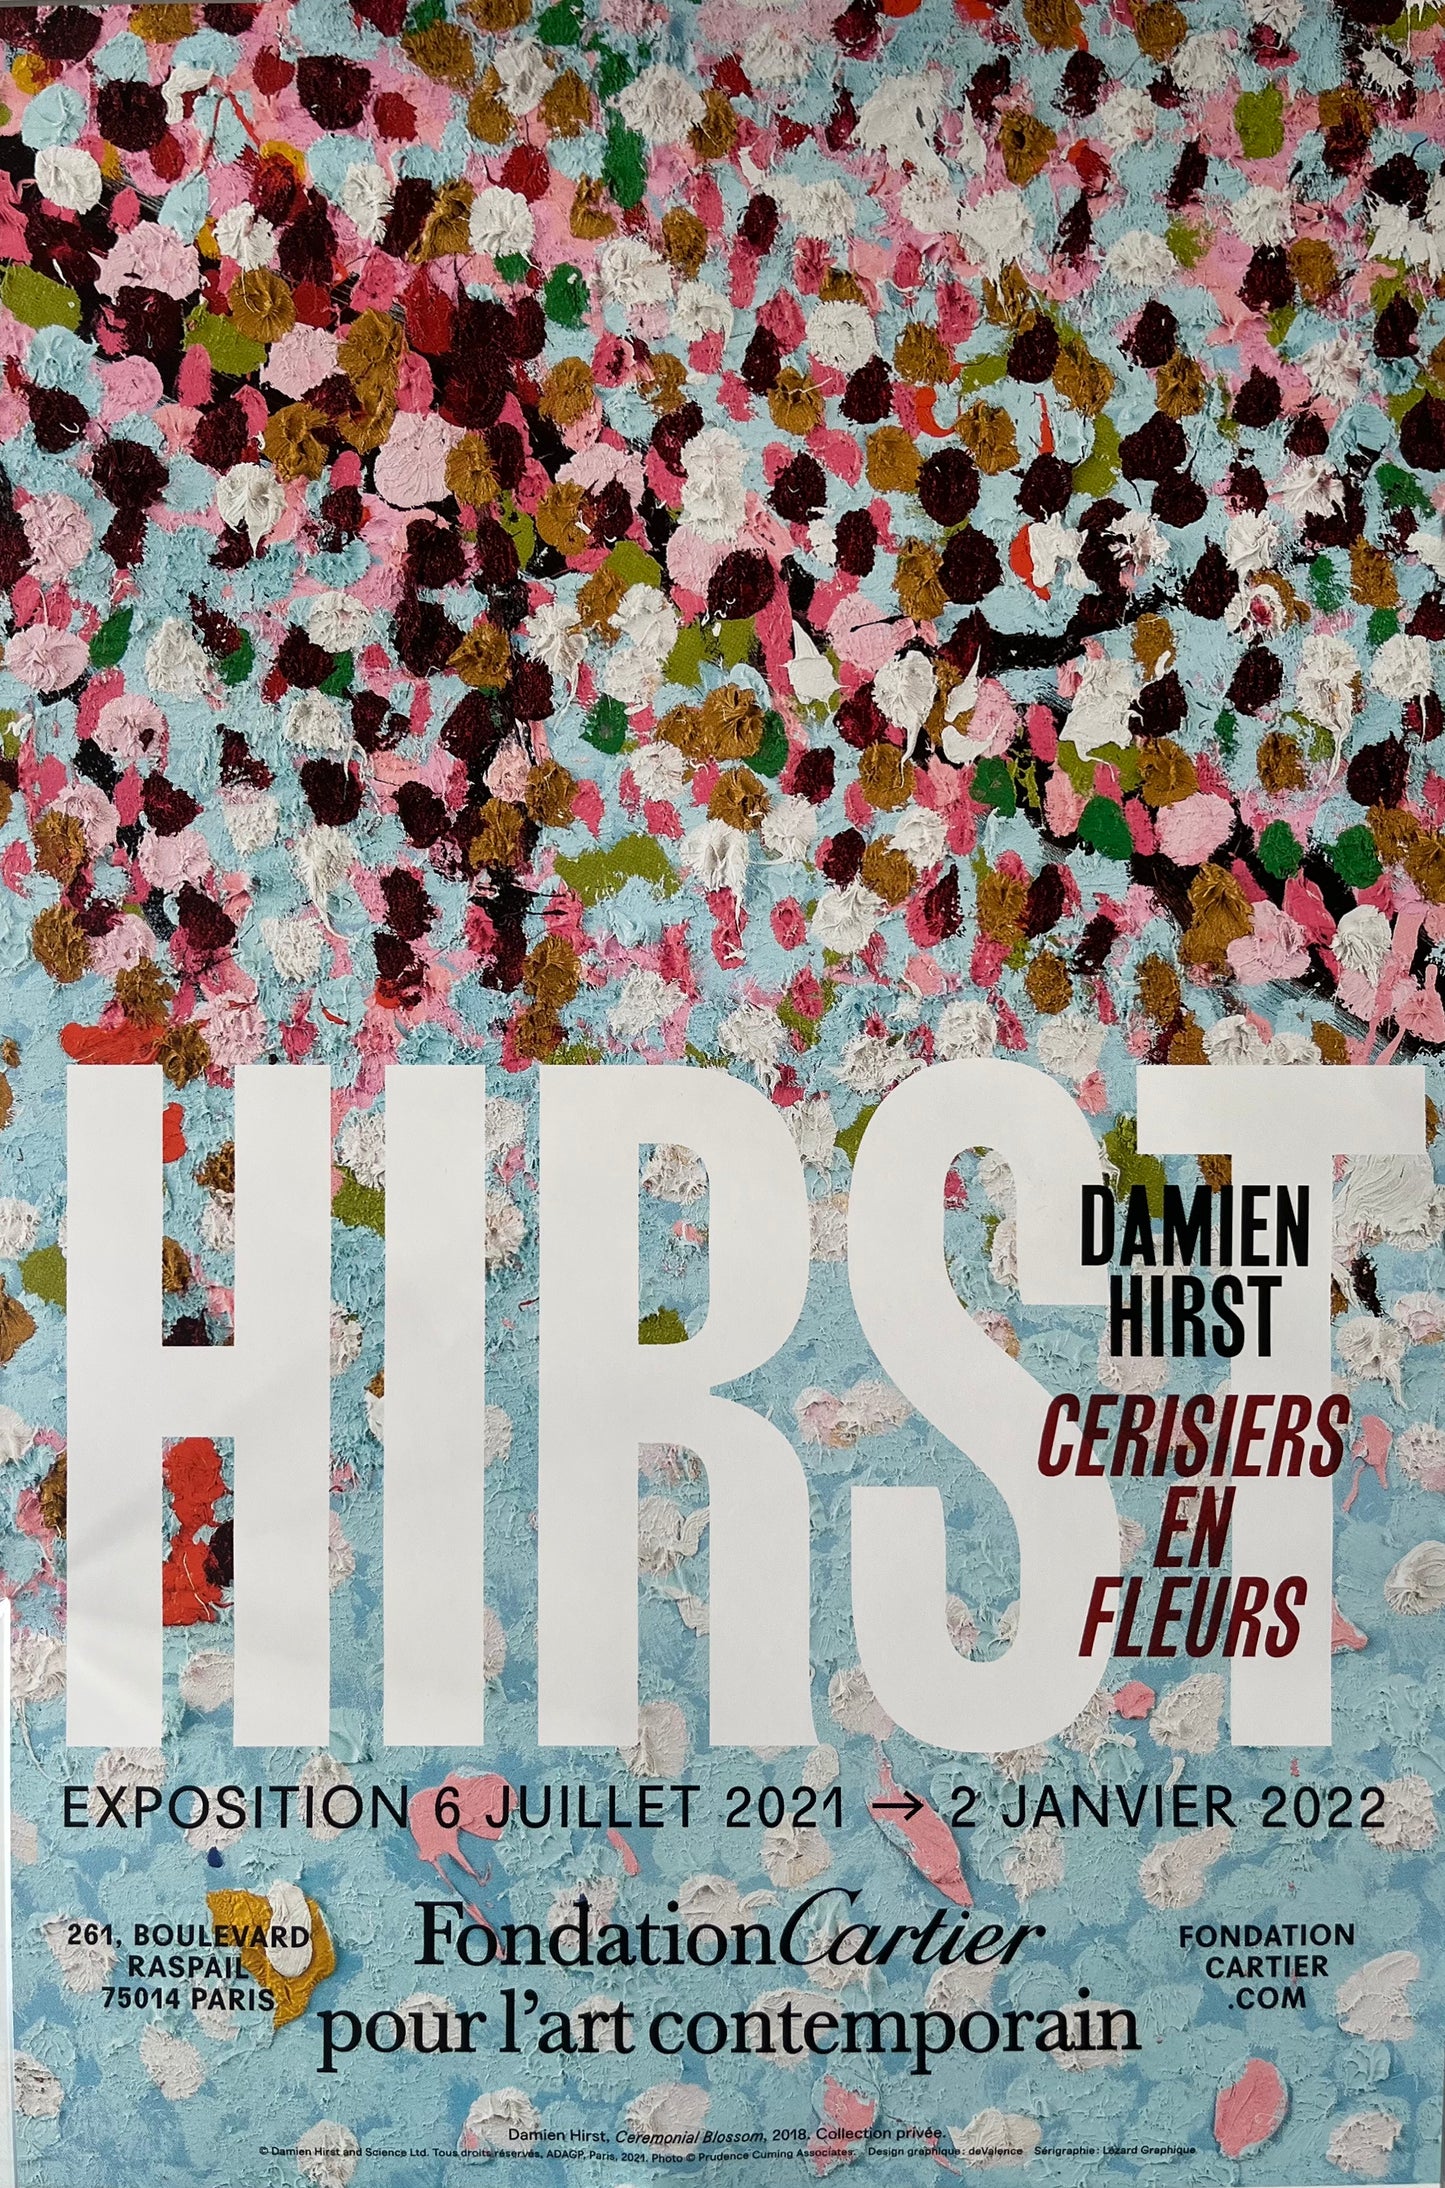 Damien Hirst x Fondation Cartier Paris© "Cerisiers en fleurs", Affiche originale d'exposition